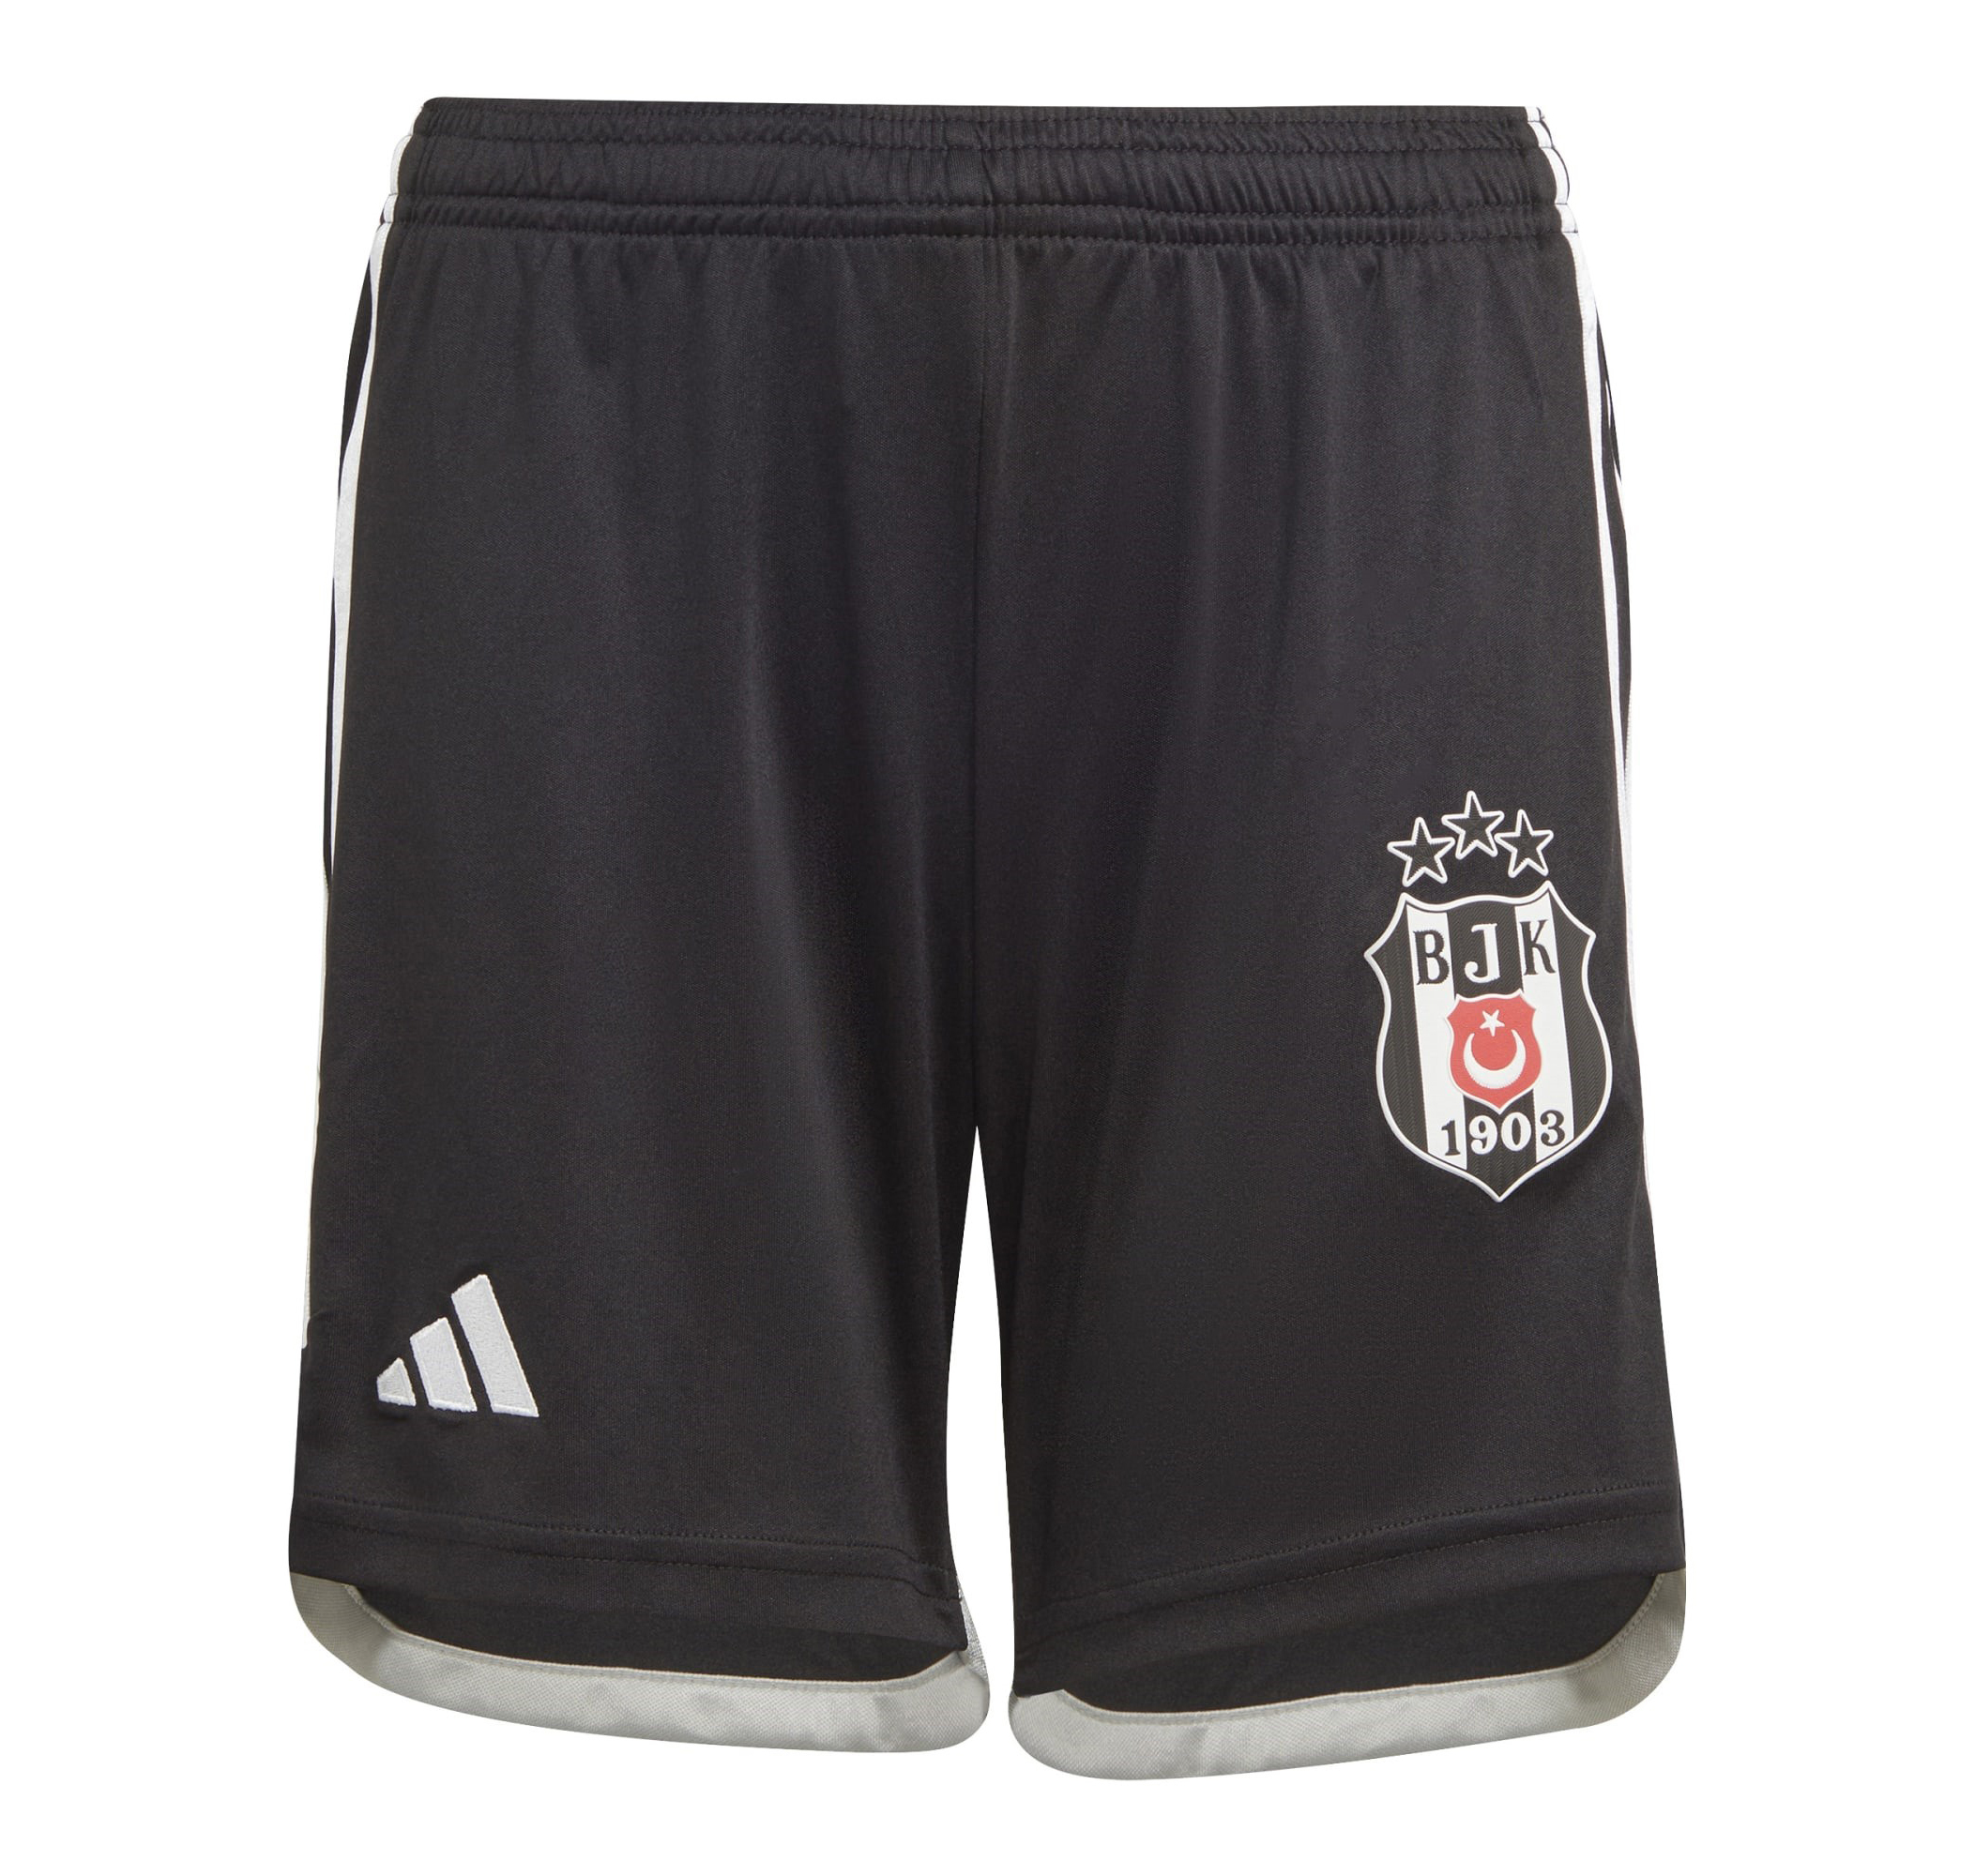 Детские шорты adidas Bjk Beşiktaş Kapri